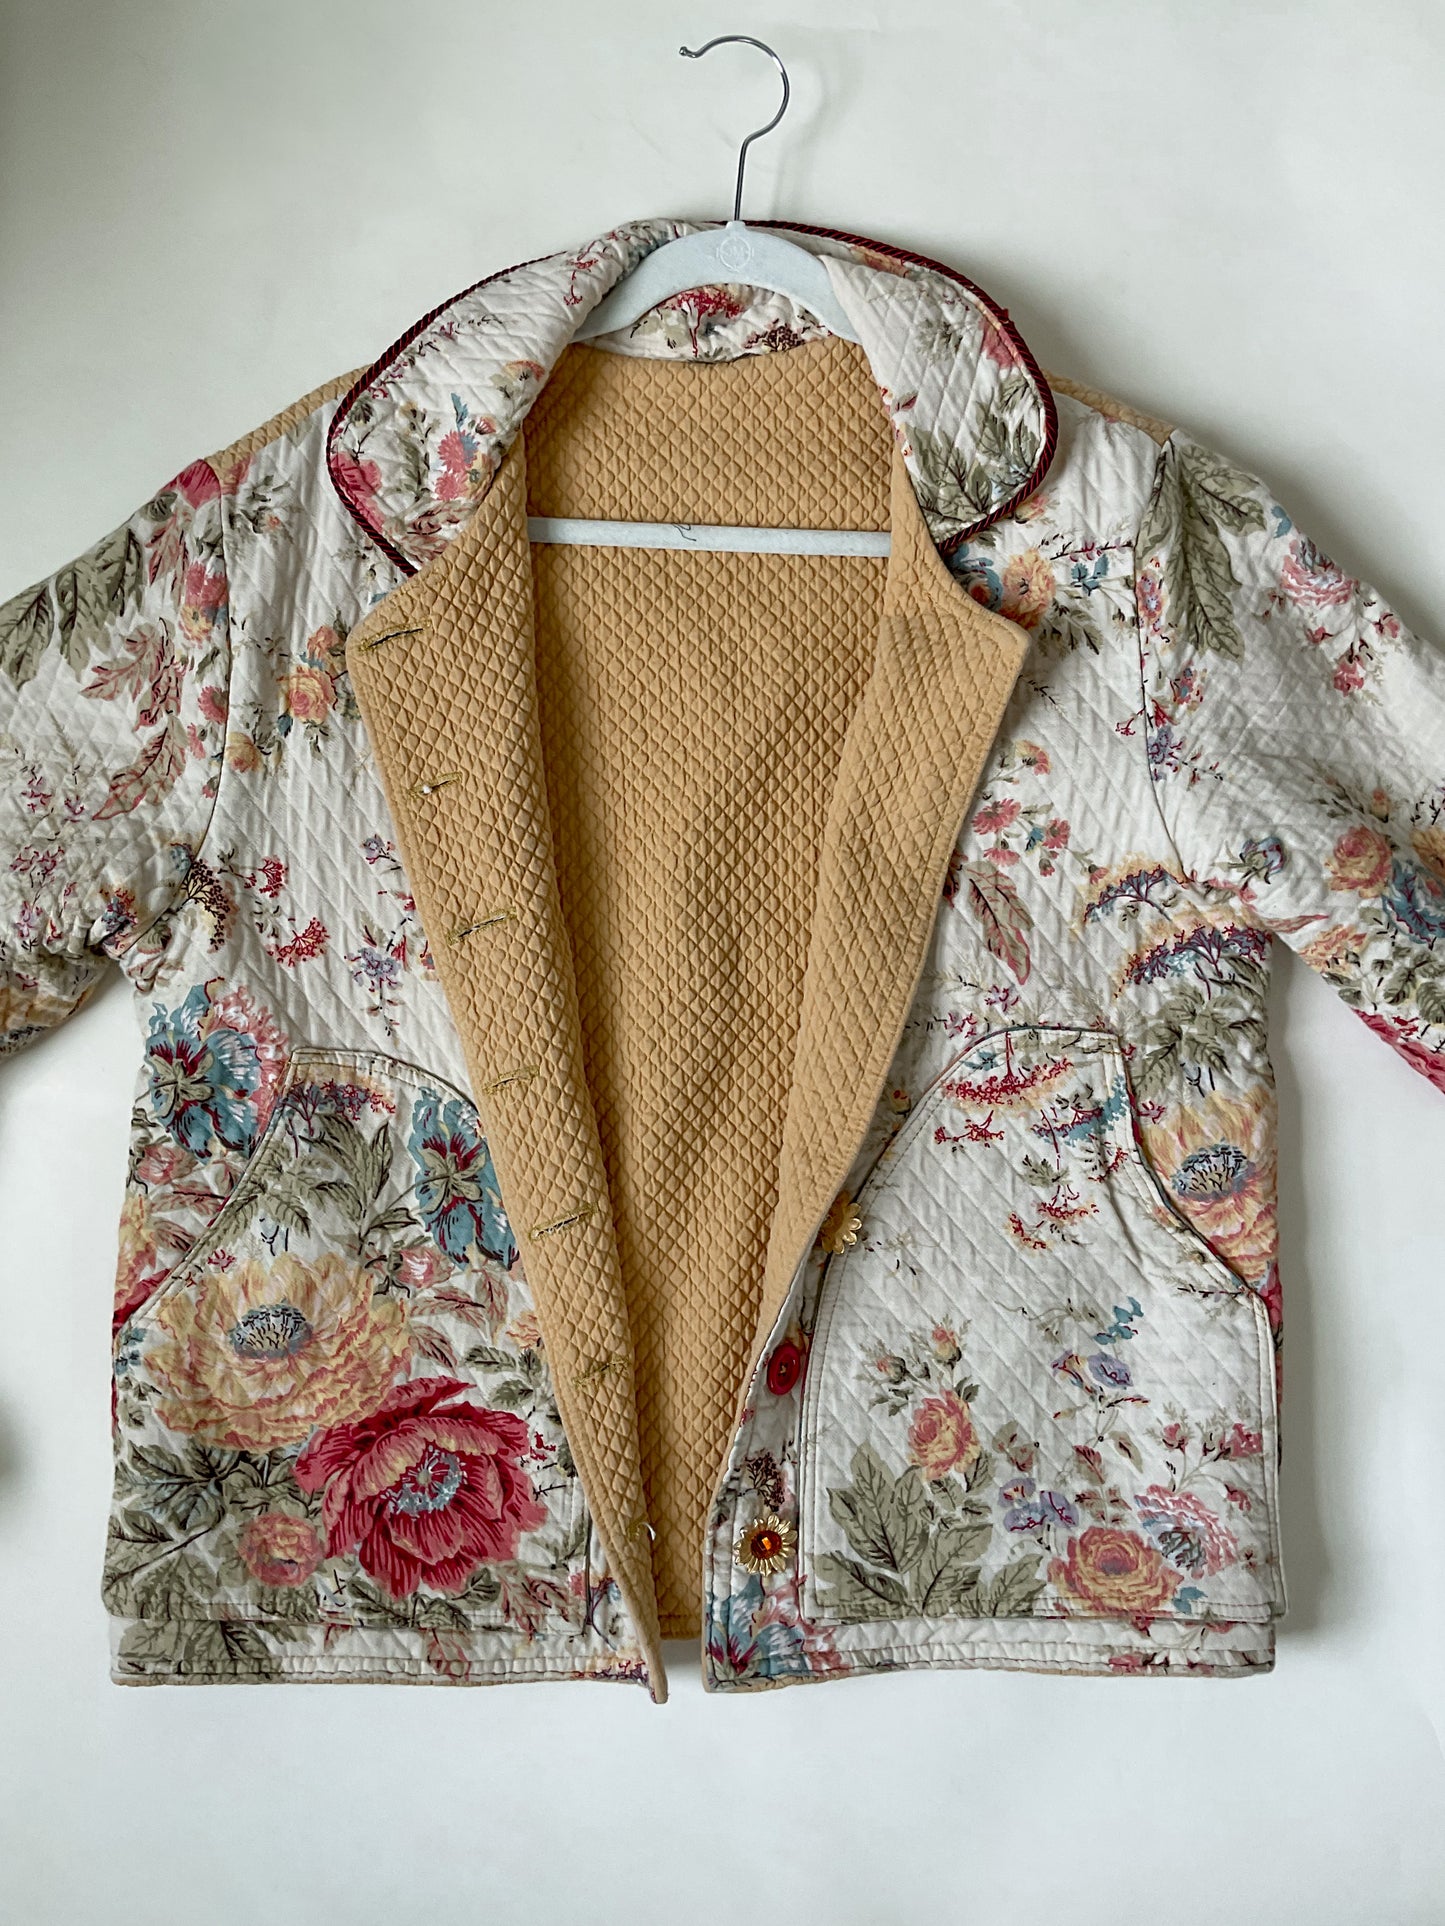 Vintage Spring Floral Quilted Jacket